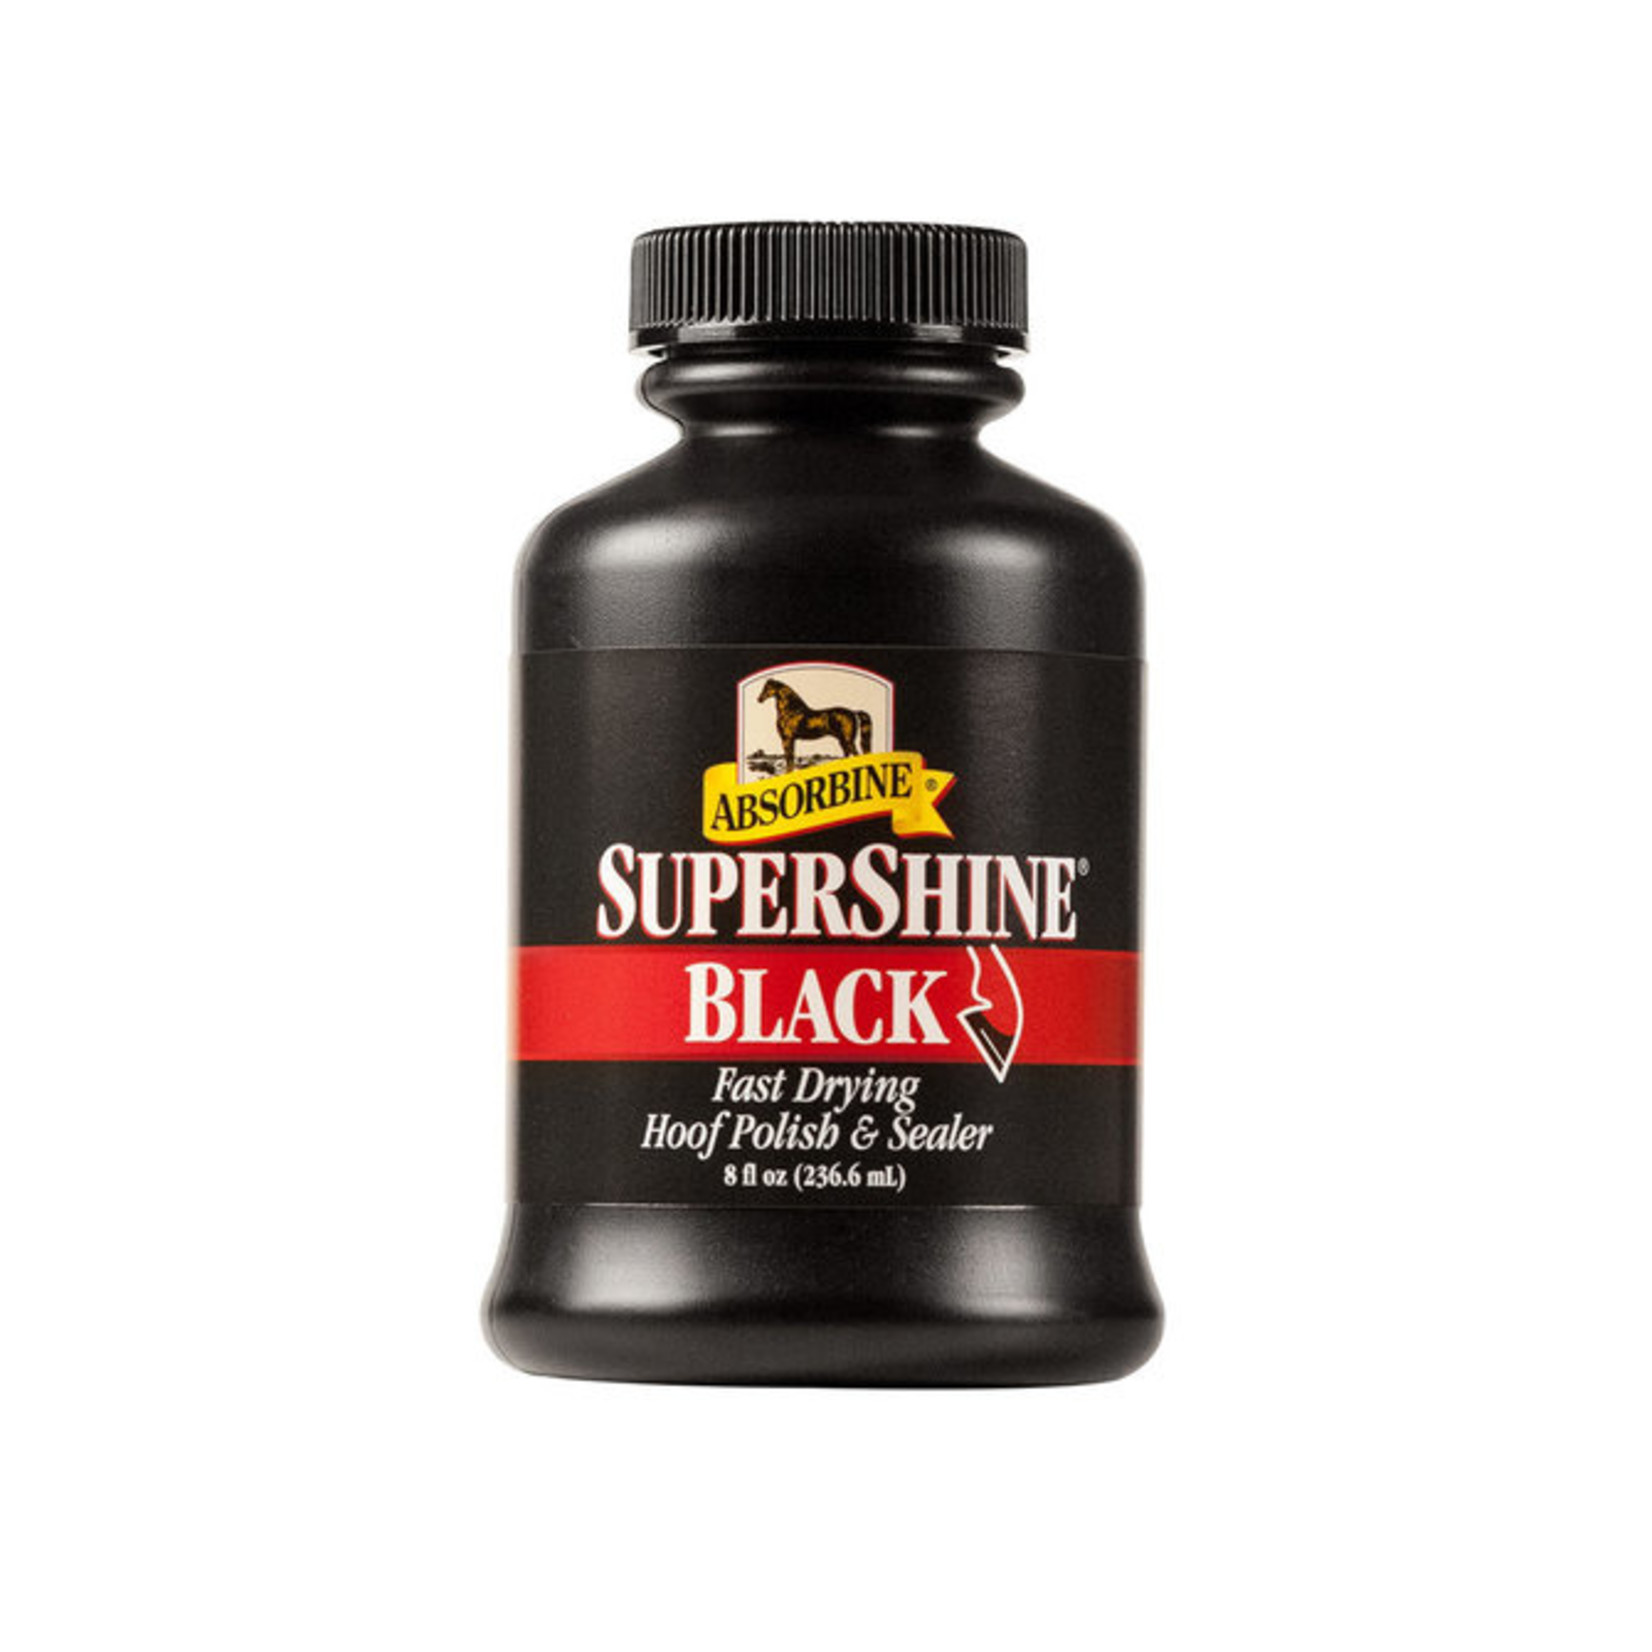 Black SuperShine Hoof Polish